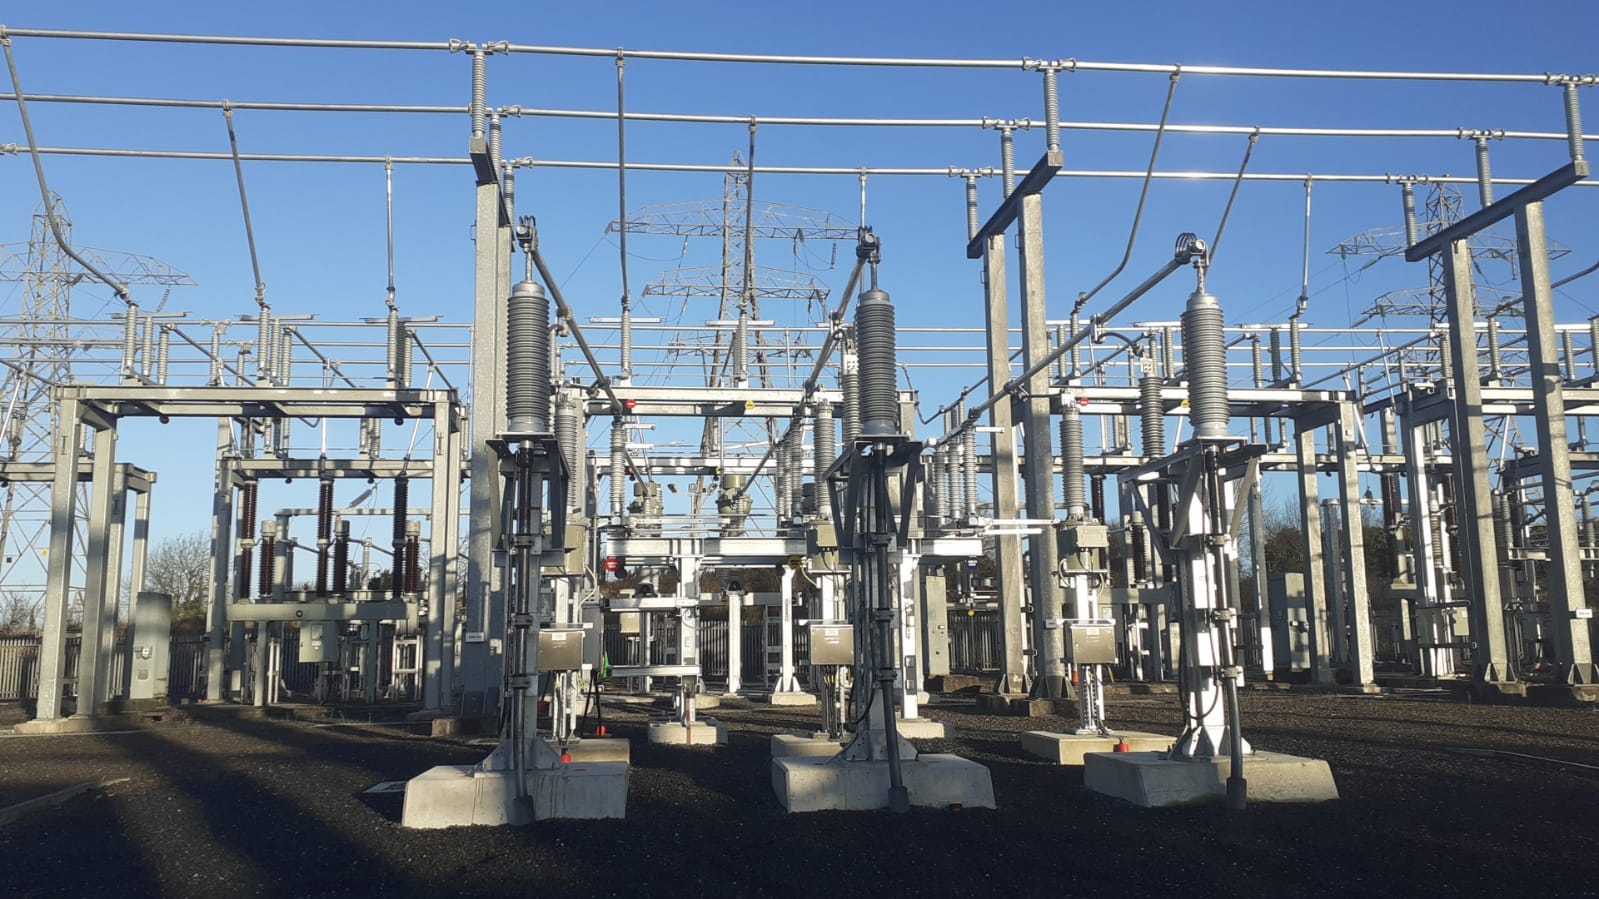 Tandragee Main 275110kv Substation Installation Of A New 110kv Ais